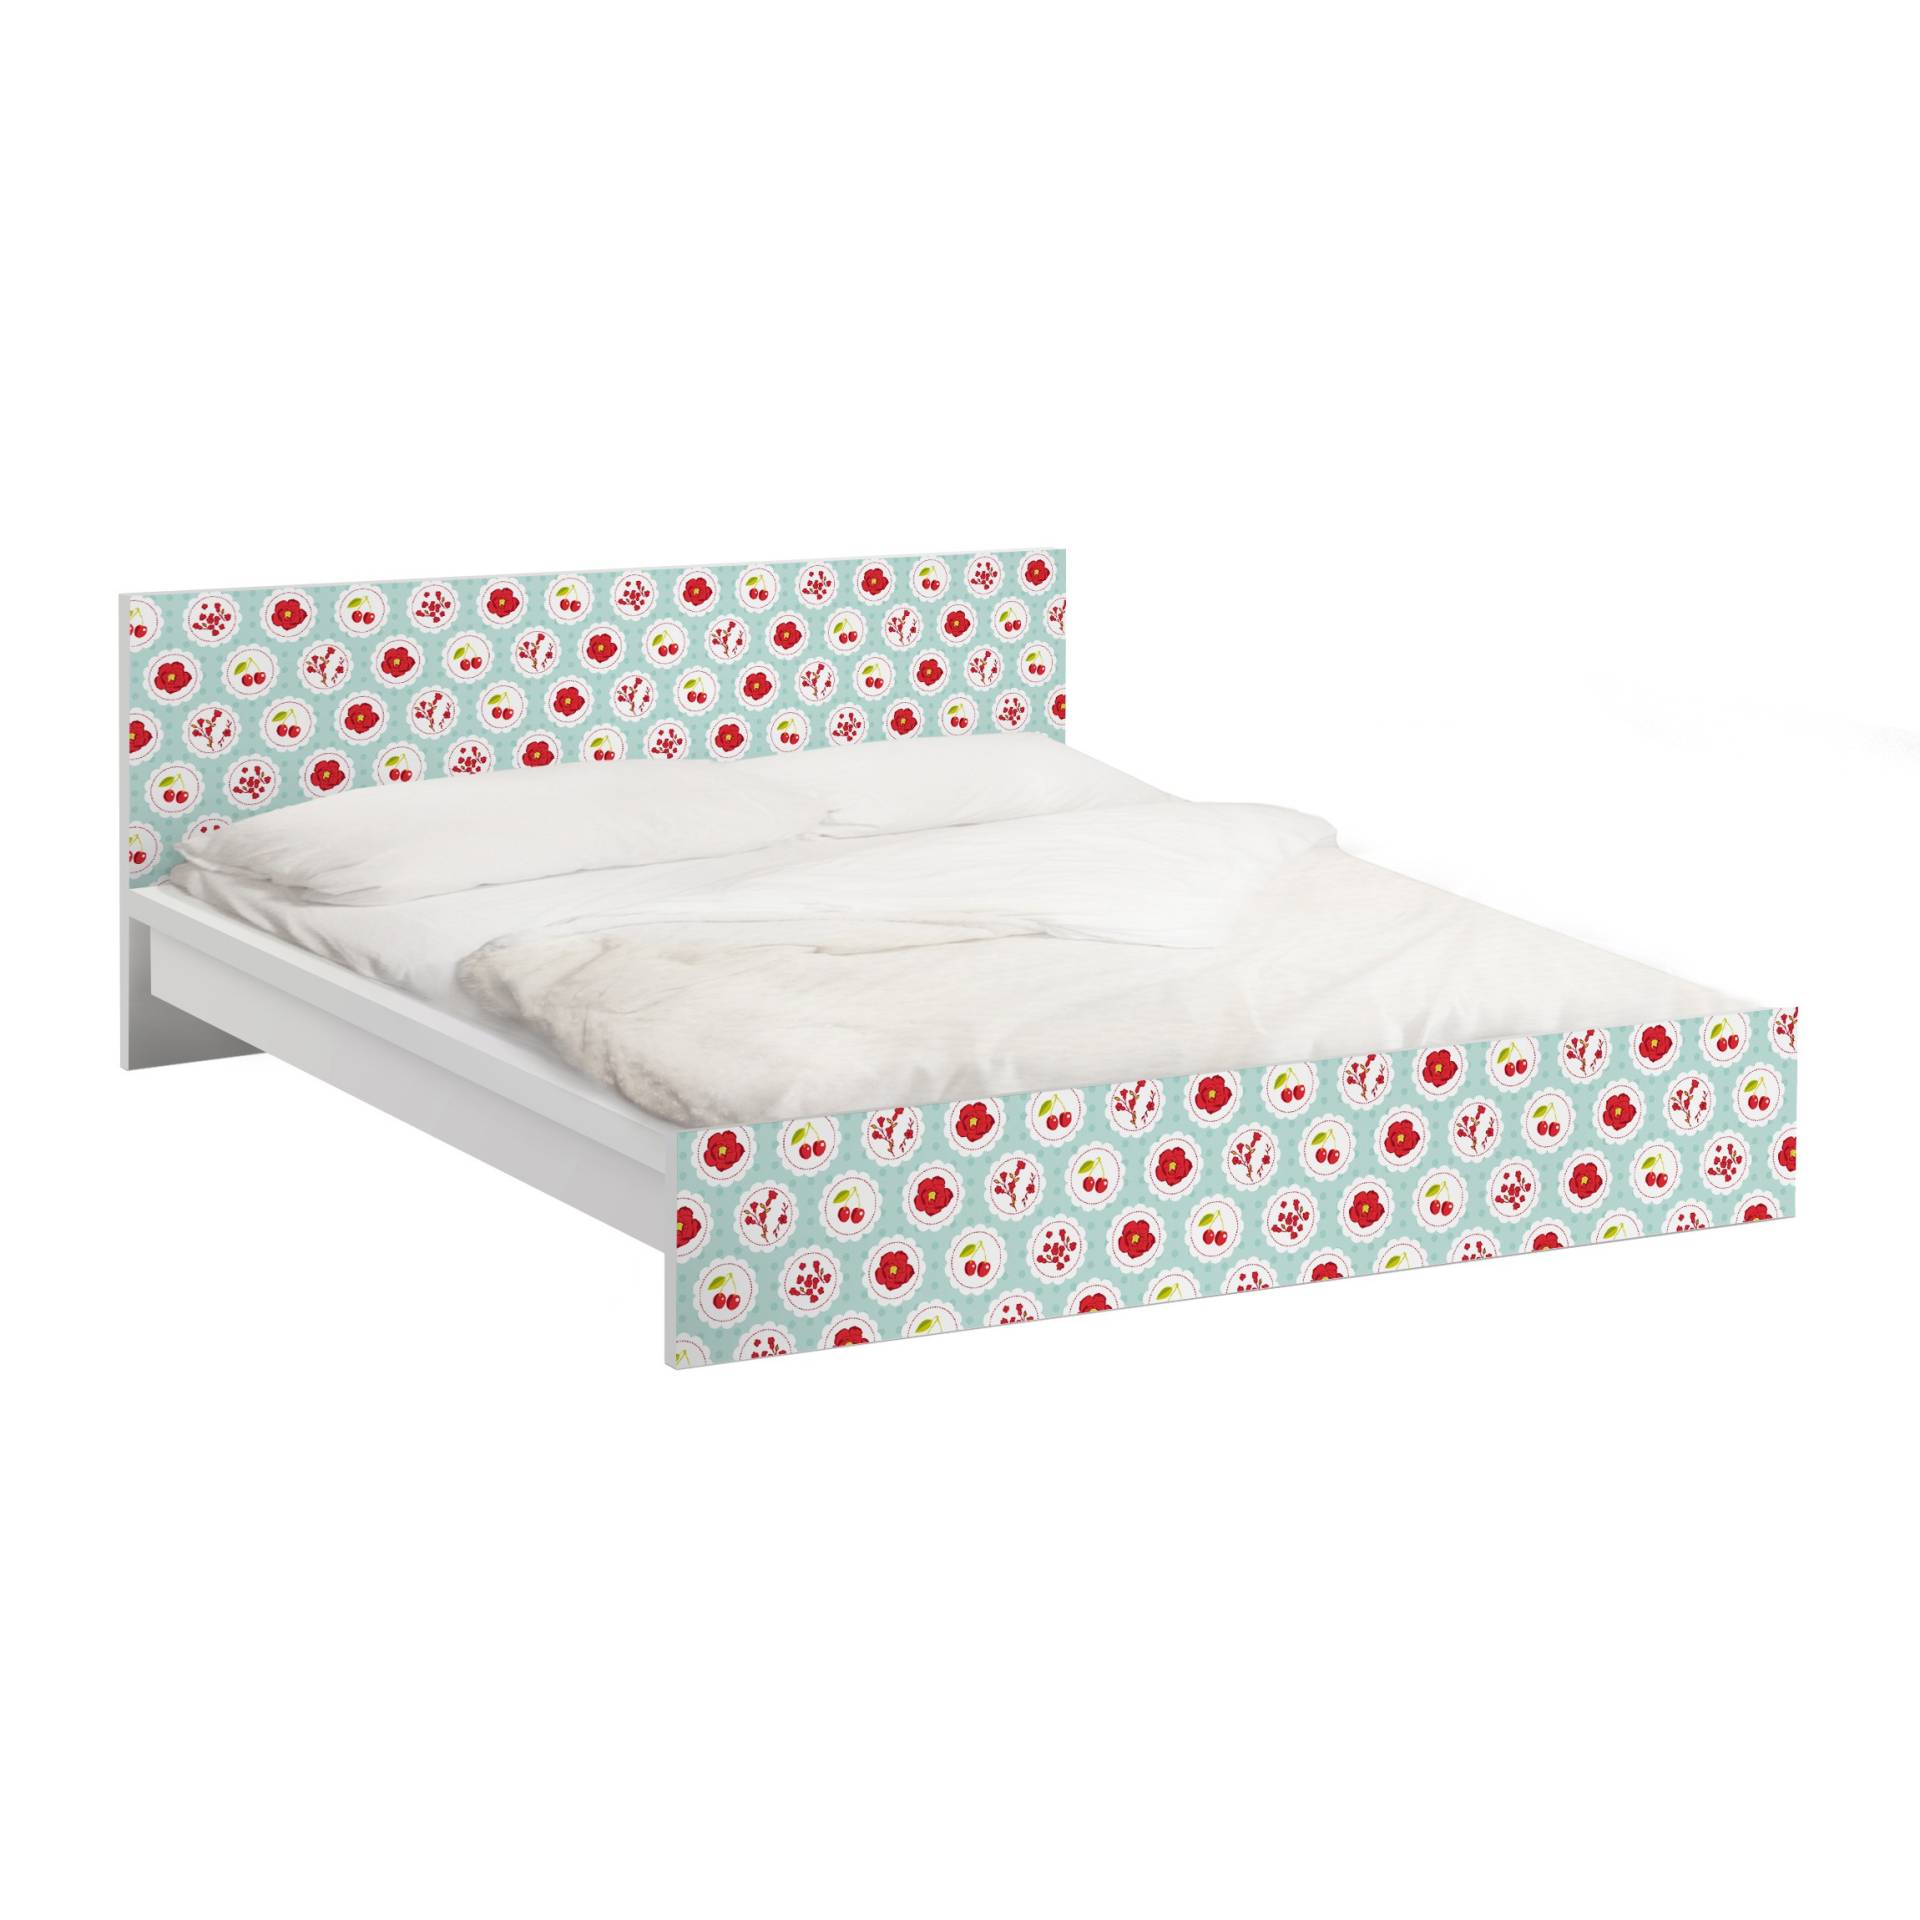 Möbelfolie für IKEA Malm Bett 160 cm Breite Kirschen Design